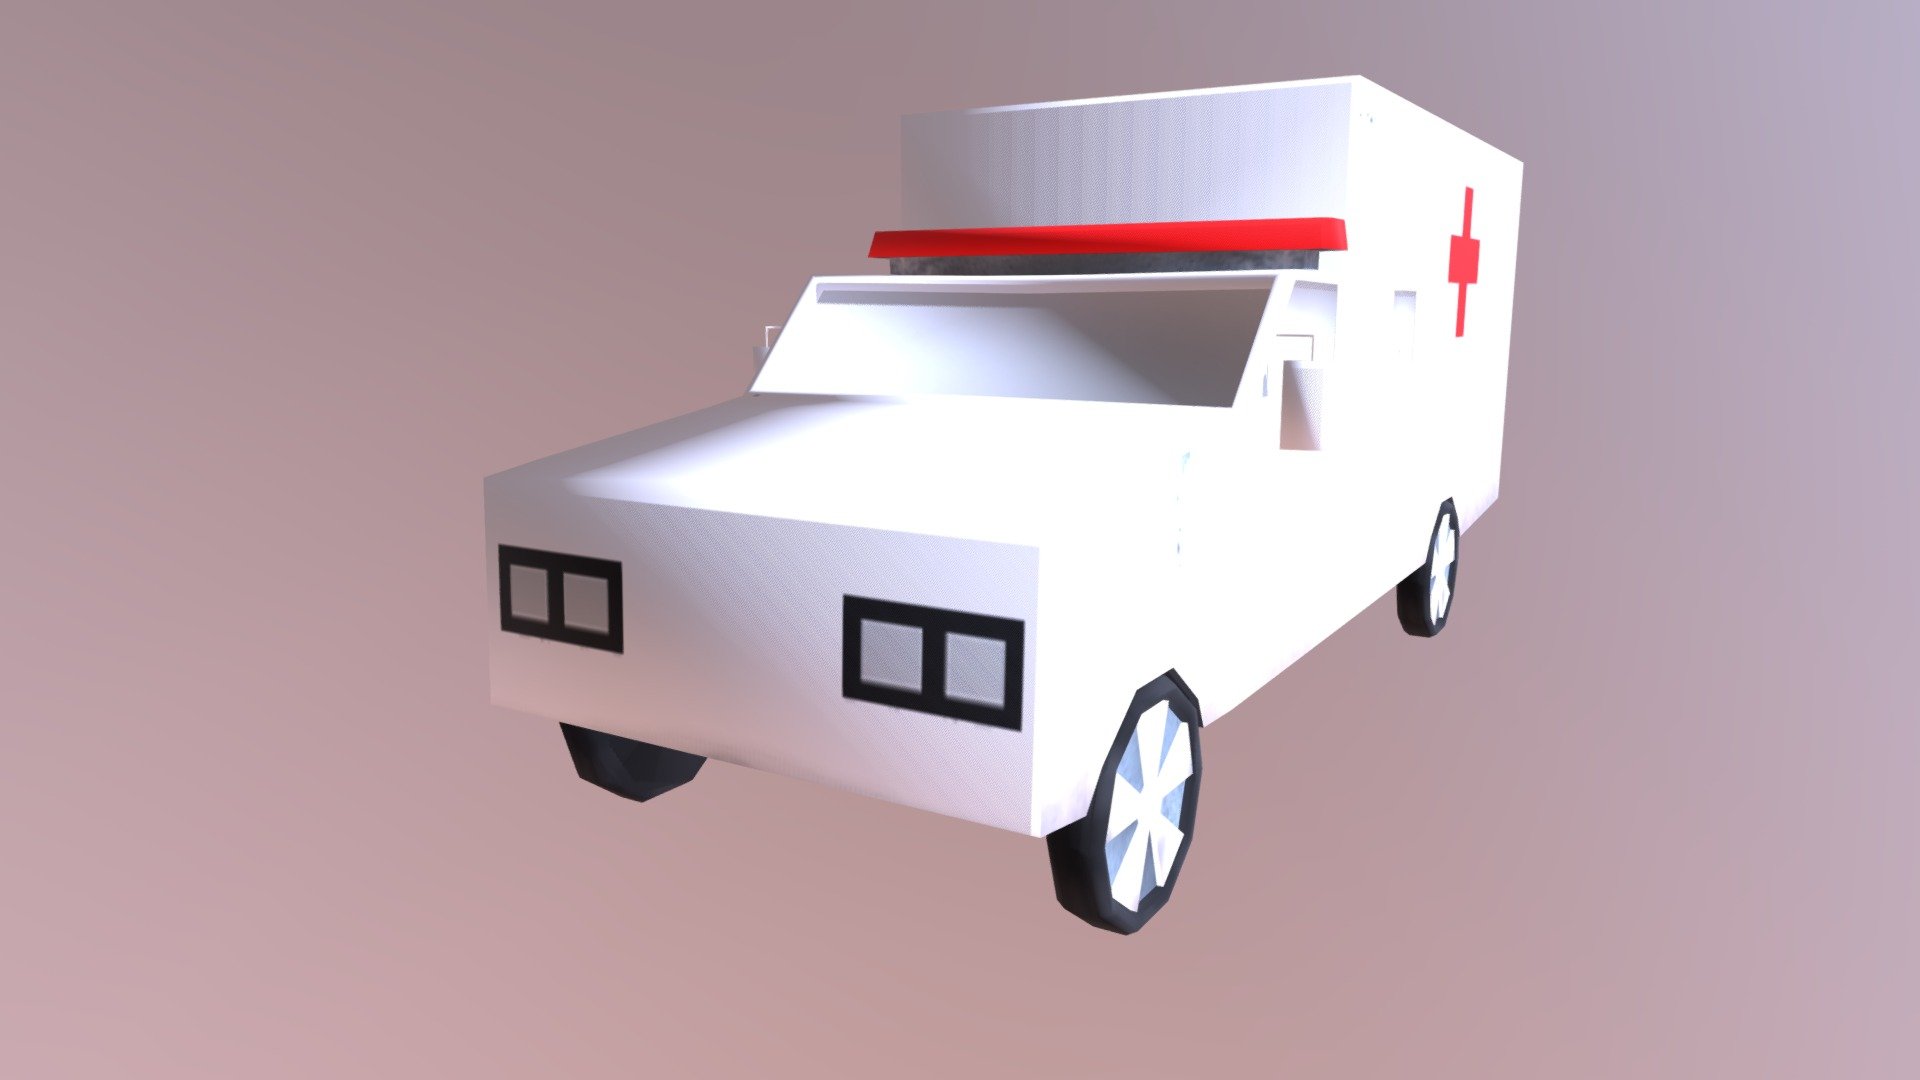 Matheus Pardini Costa

Curso Superior de Tecnologia em Jogos Digitais

Disciplina: Modelagem de Objetos

Nome original do objeto: Ambulância - 18 (ID)
 - Ambulance - 3D model by Matheus Pardini (@matheuspardinicosta) 3d model